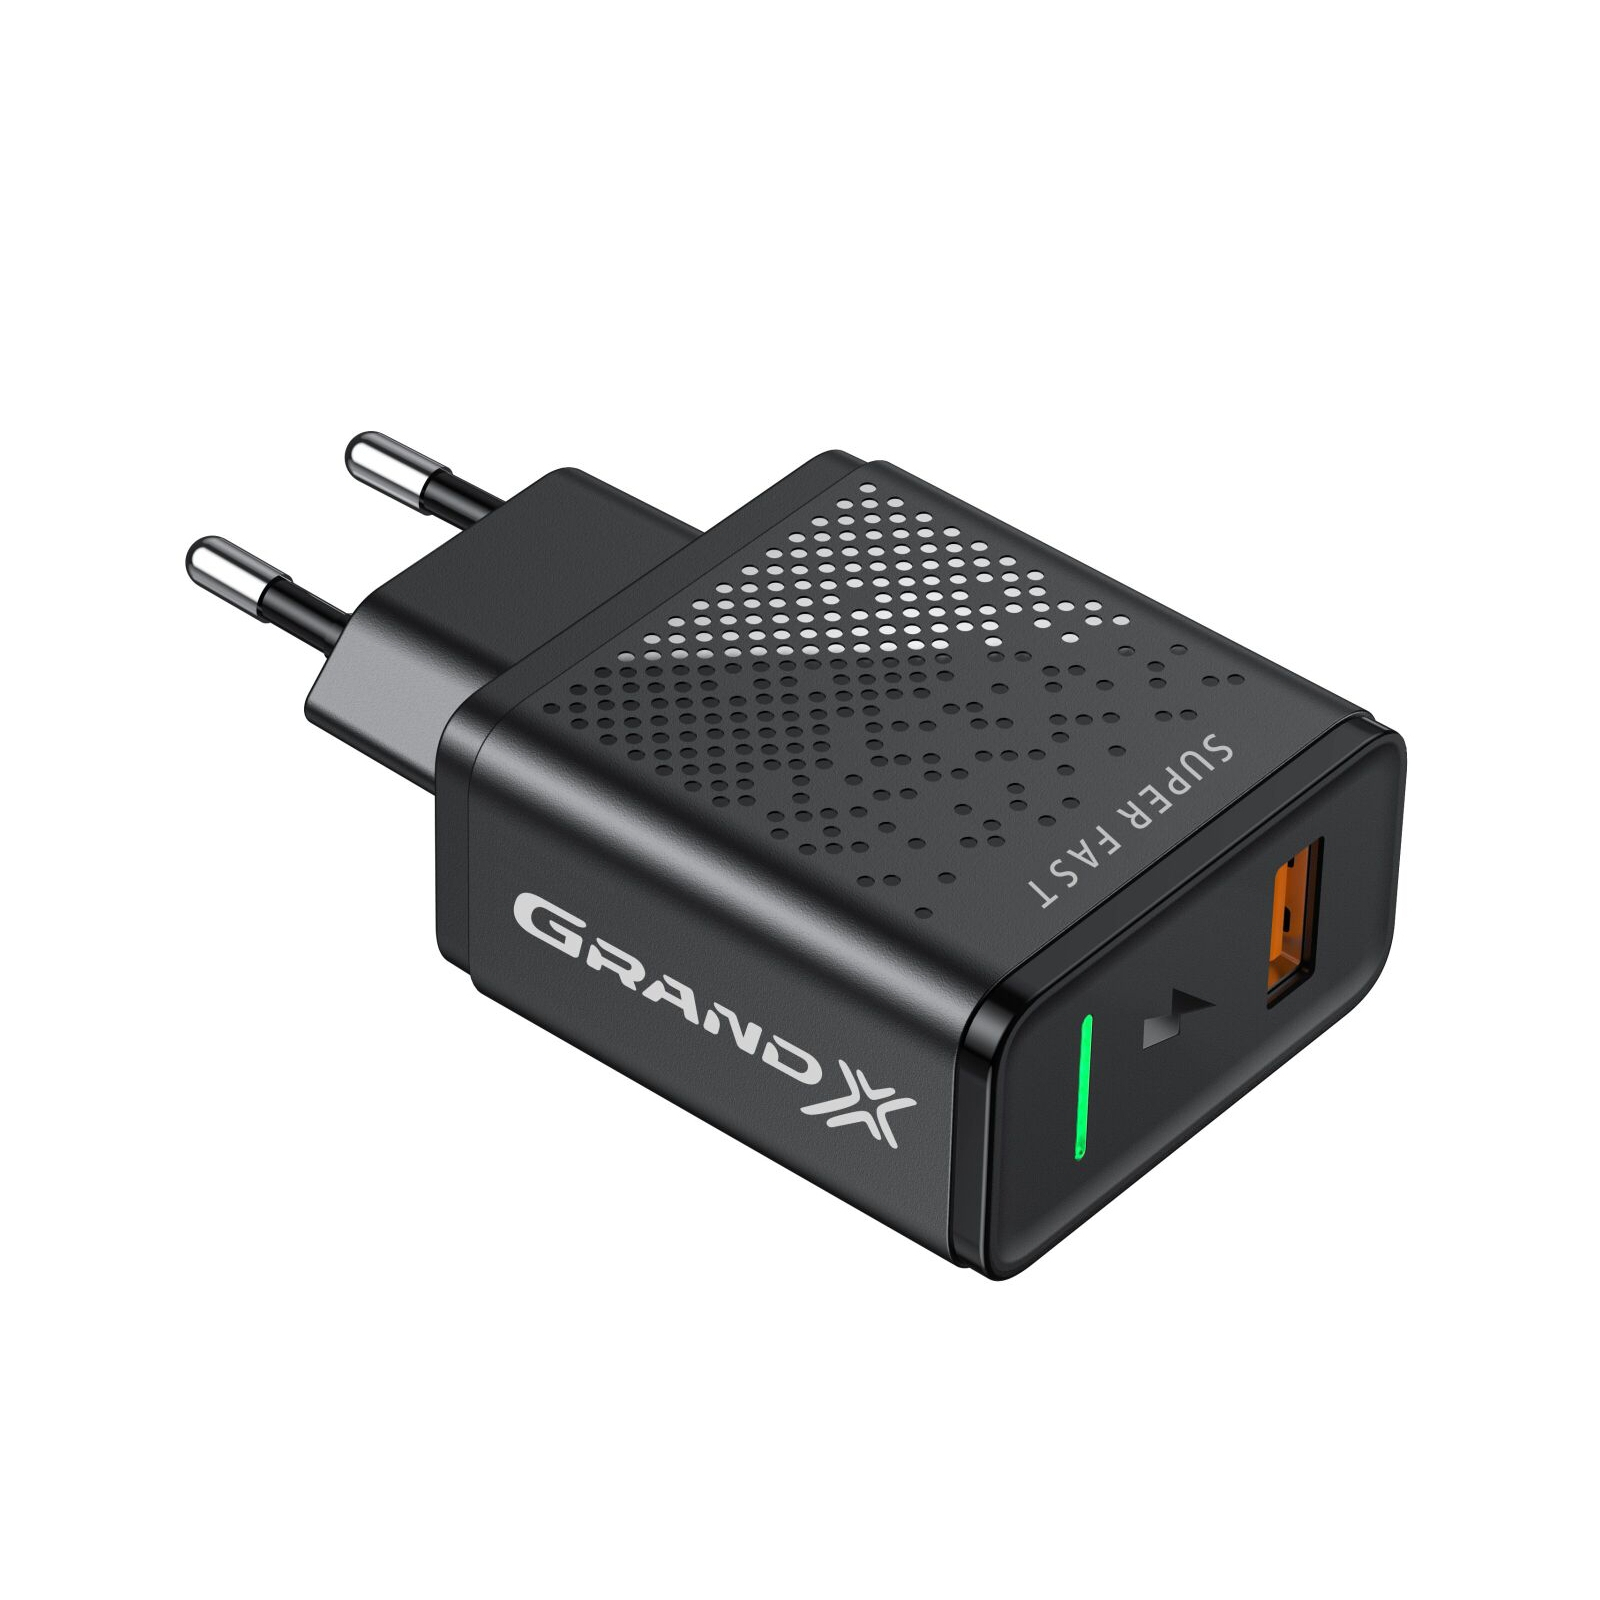 Зарядний пристрій Grand-X Fast Charge 5-в-1 QC 3.0, AFC, SCP,FCP, VOOC, 1 USB 22.5W (CH-850) зображення 2